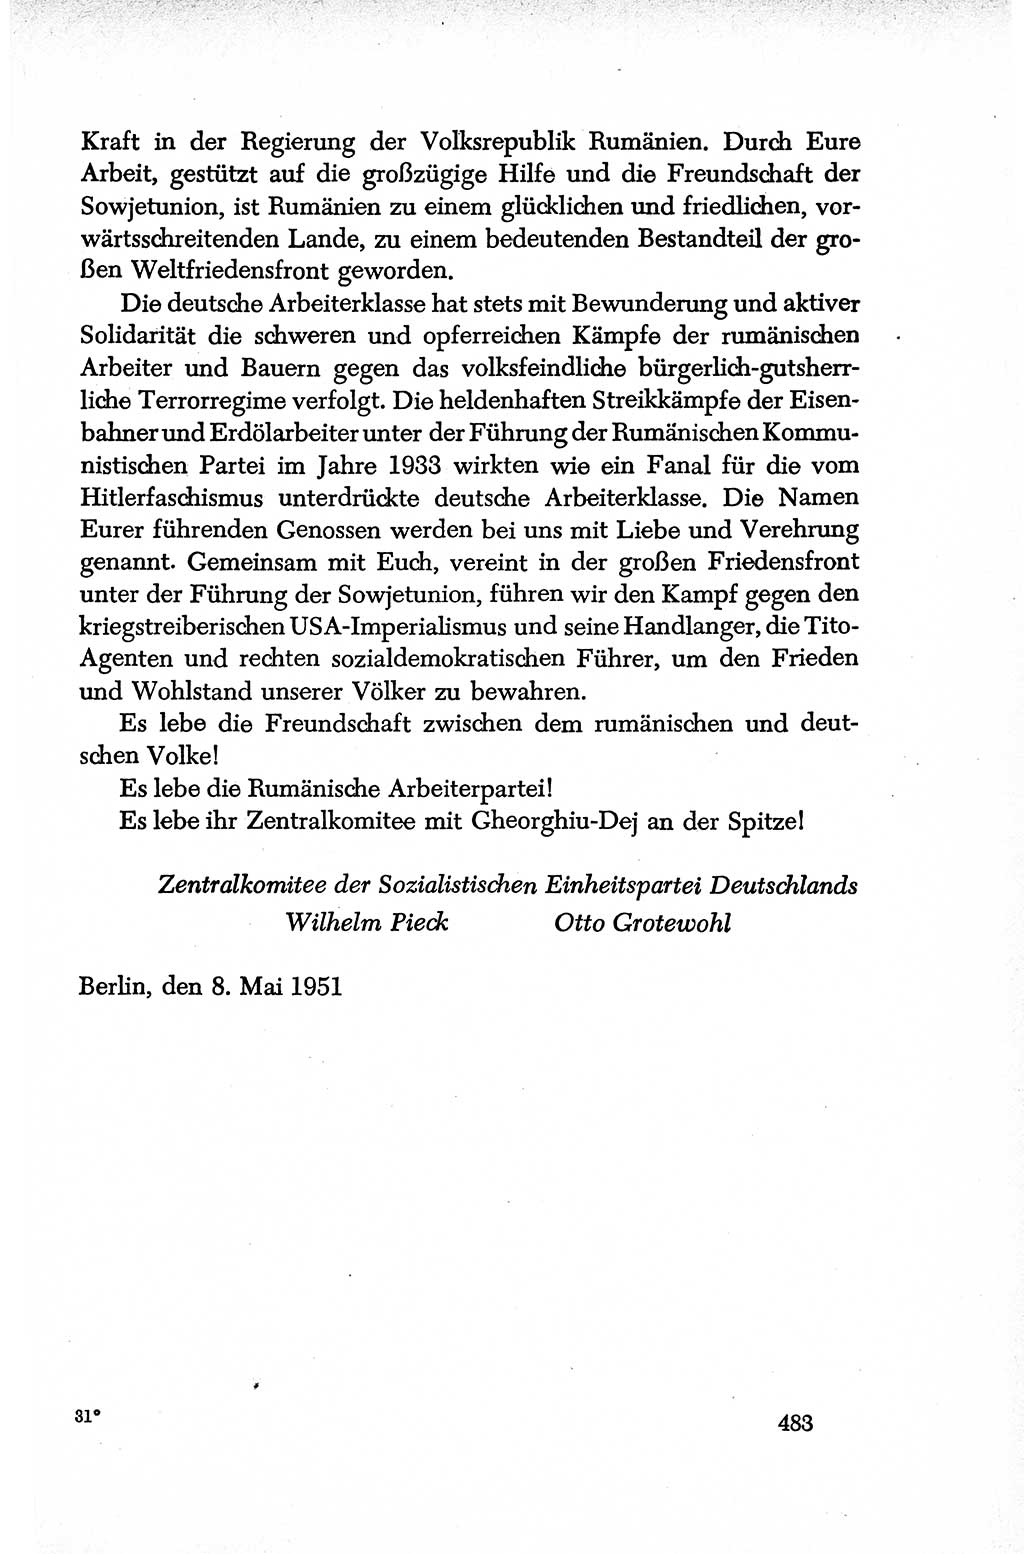 Dokumente der Sozialistischen Einheitspartei Deutschlands (SED) [Deutsche Demokratische Republik (DDR)] 1950-1952, Seite 483 (Dok. SED DDR 1950-1952, S. 483)